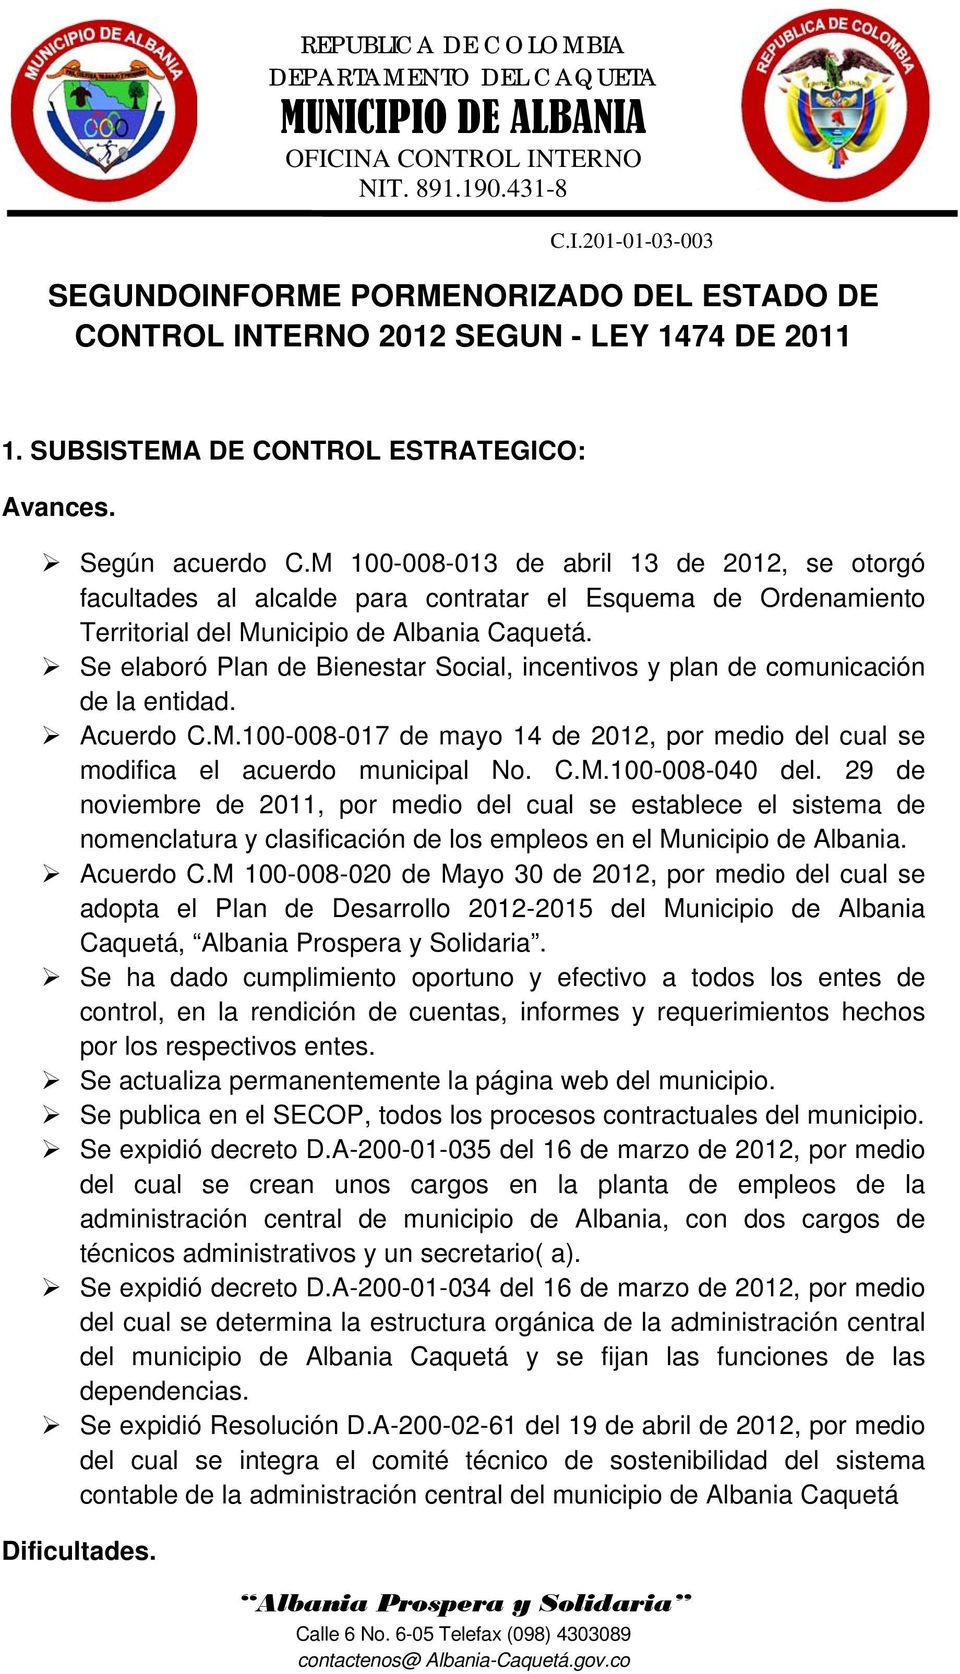 Se elaboró Plan de Bienestar Social, incentivos y plan de comunicación de la entidad. Acuerdo C.M.100-008-017 de mayo 14 de 2012, por medio del cual se modifica el acuerdo municipal No. C.M.100-008-040 del.